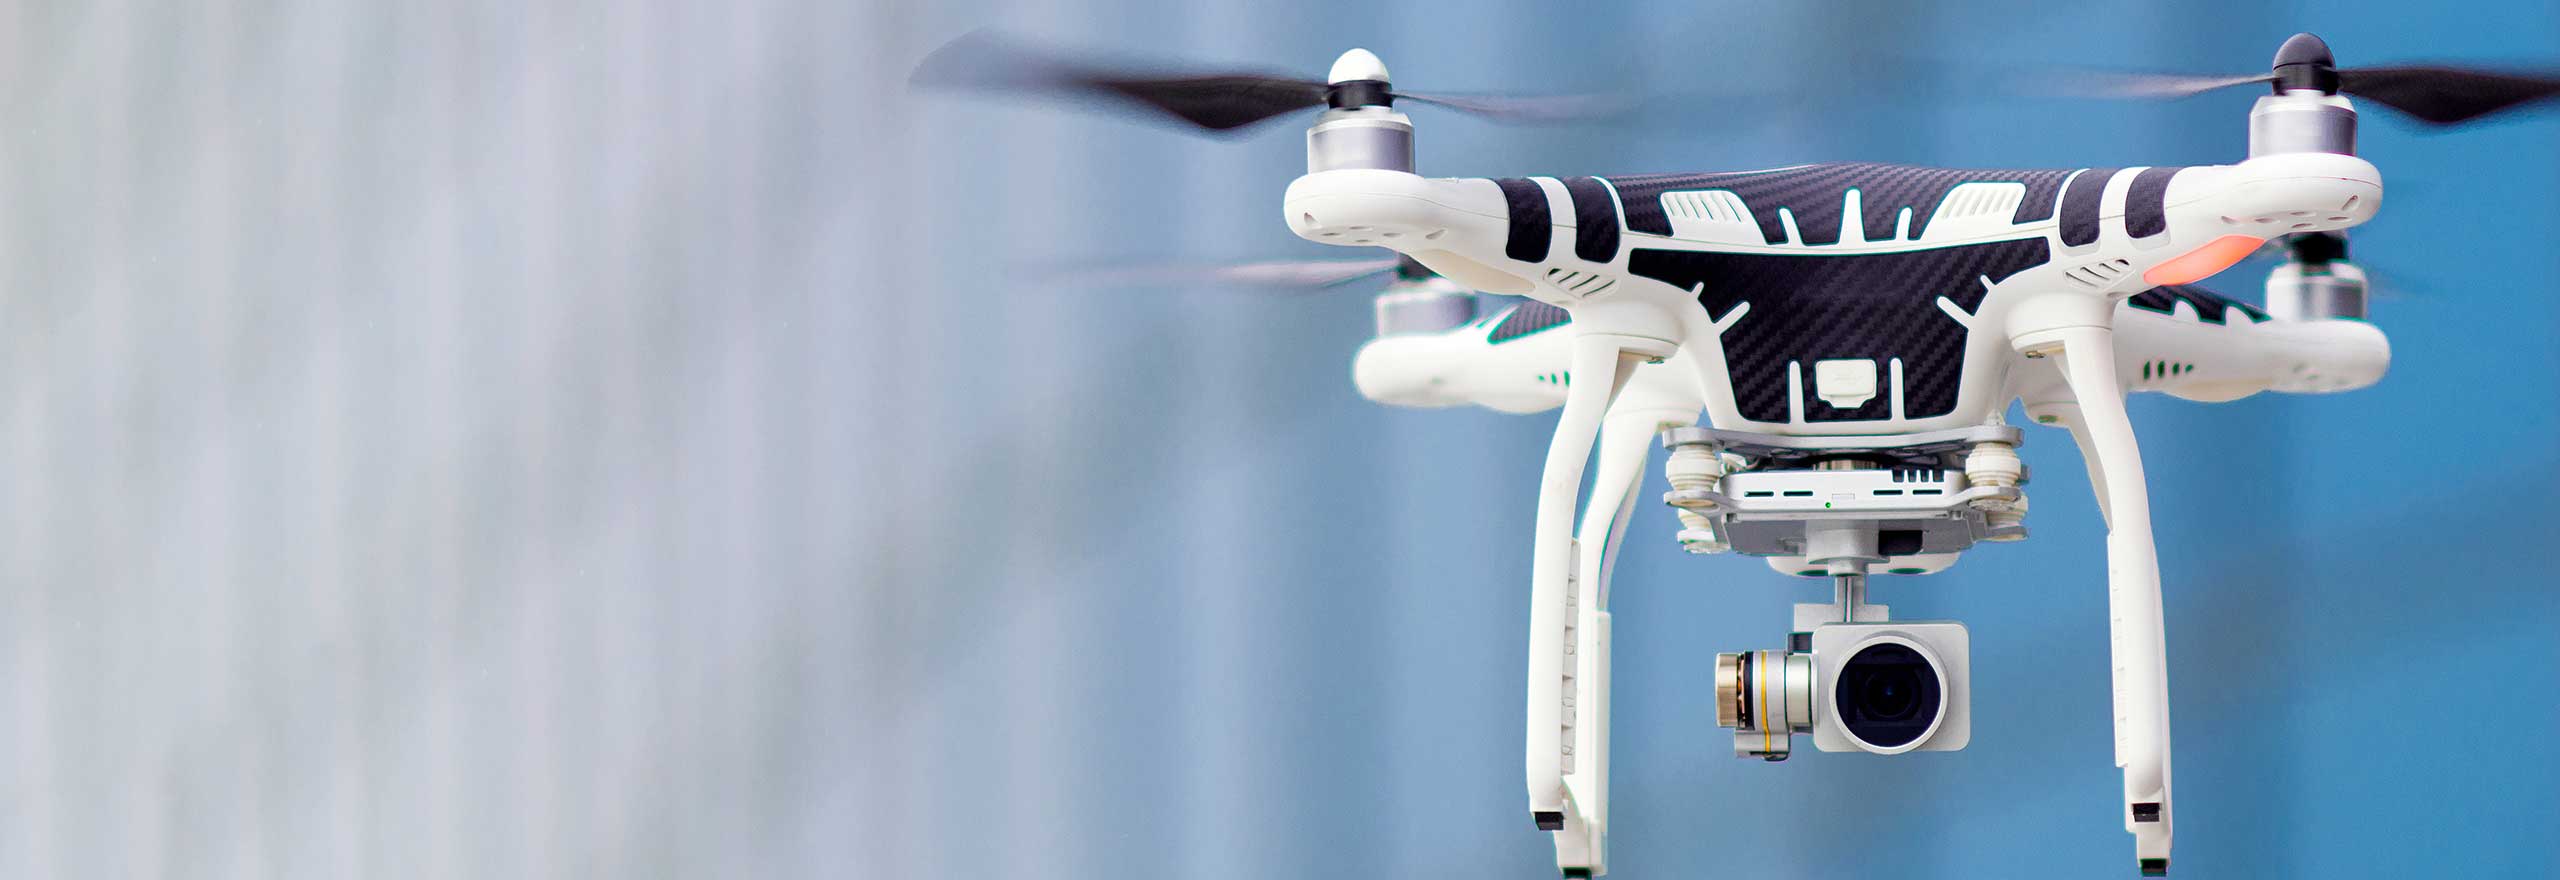 Schwebende Drohne mit Kamera auf blauem Hintergrund